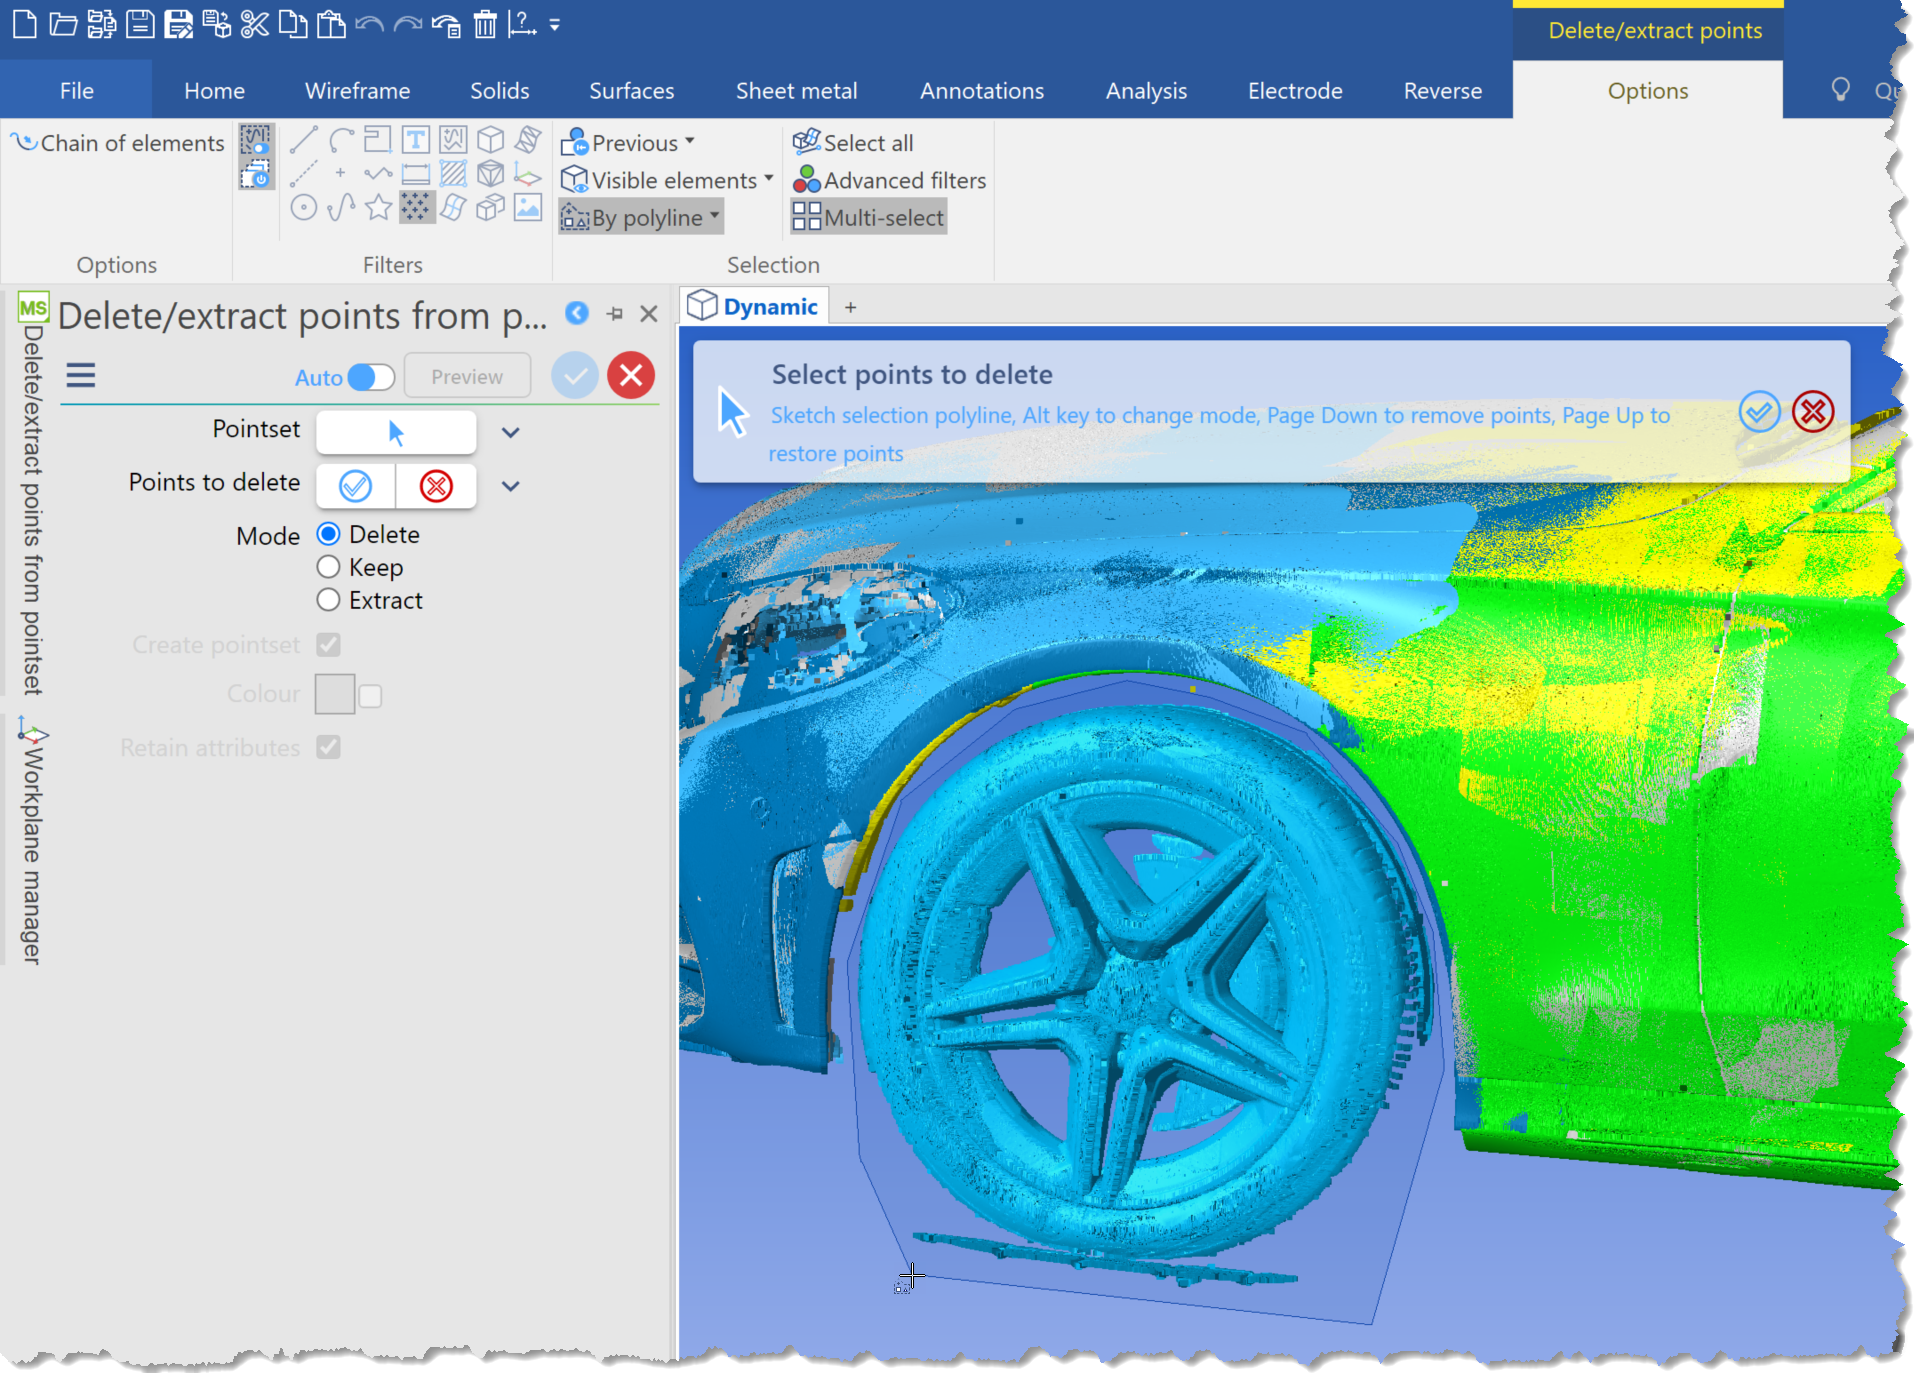 Immagini del software di reverse engineering che mostrano un confronto tra CAD e Mesh